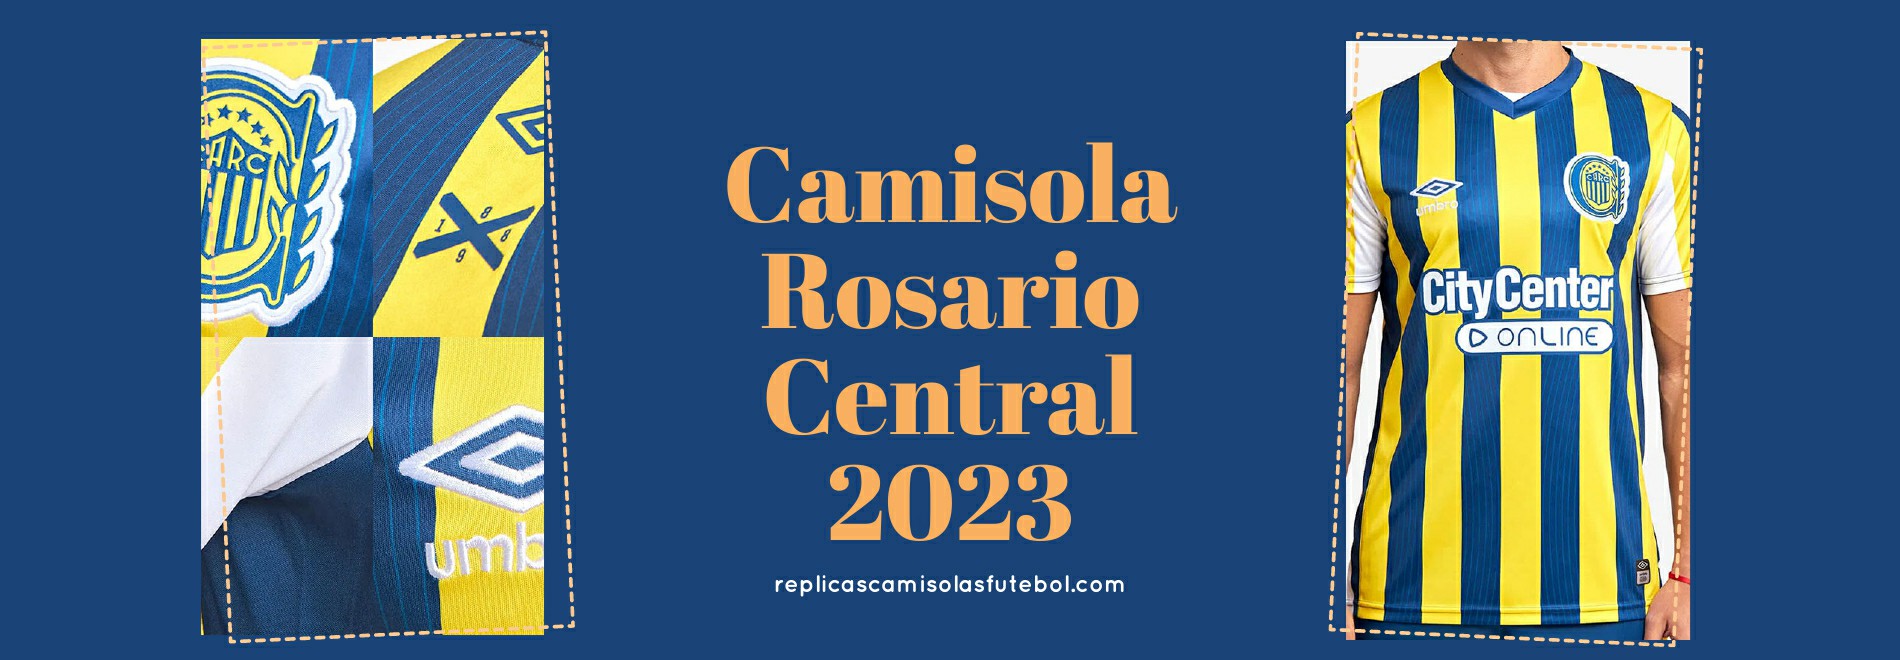 Camisola Rosario Central 2023-2024